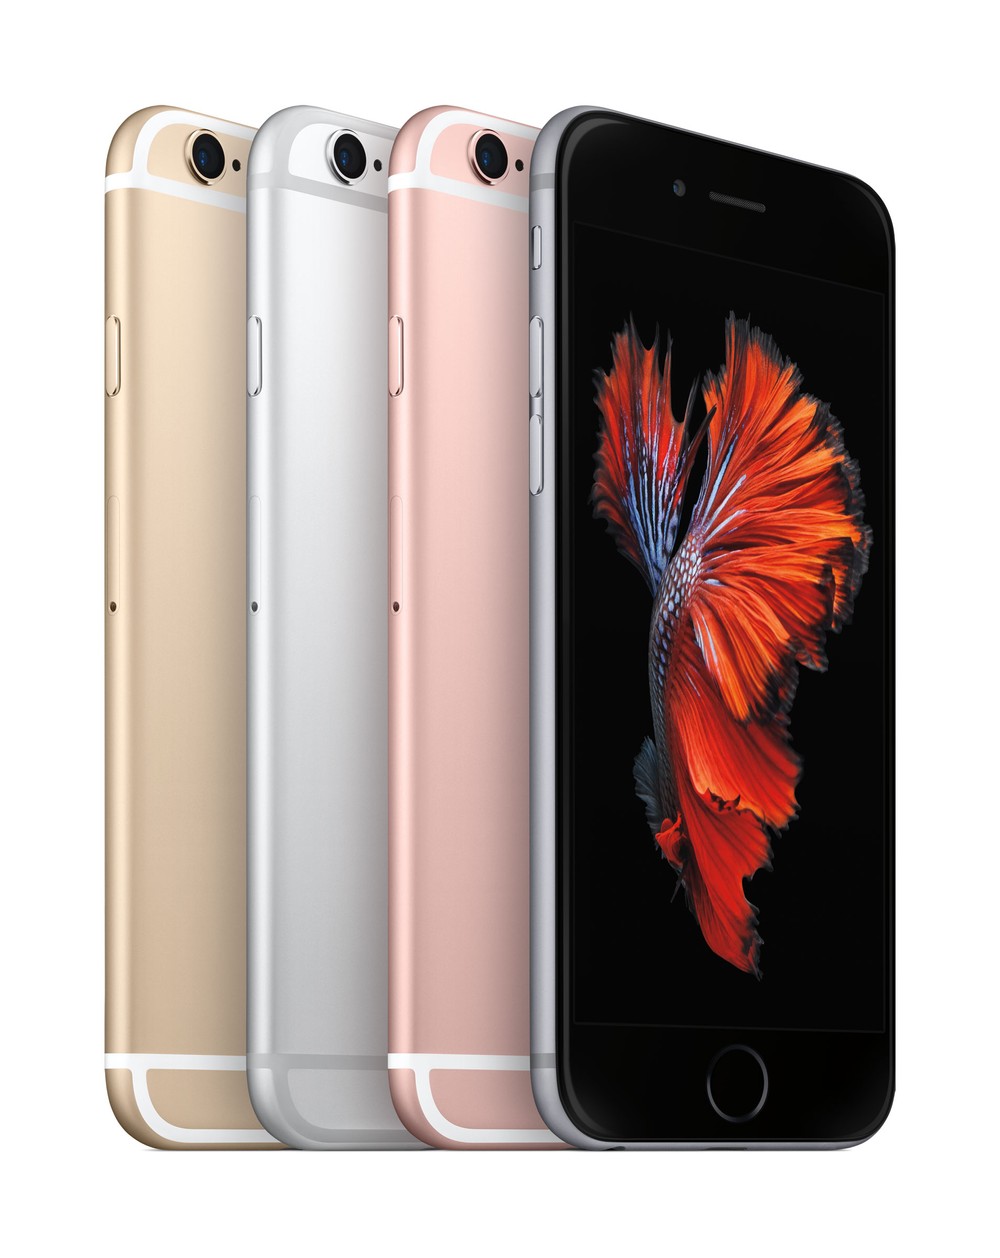 Apple lança iPhone 6s na cor ouro rosé com câmera de 12MP e 3D Touch -  TudoCelular.com